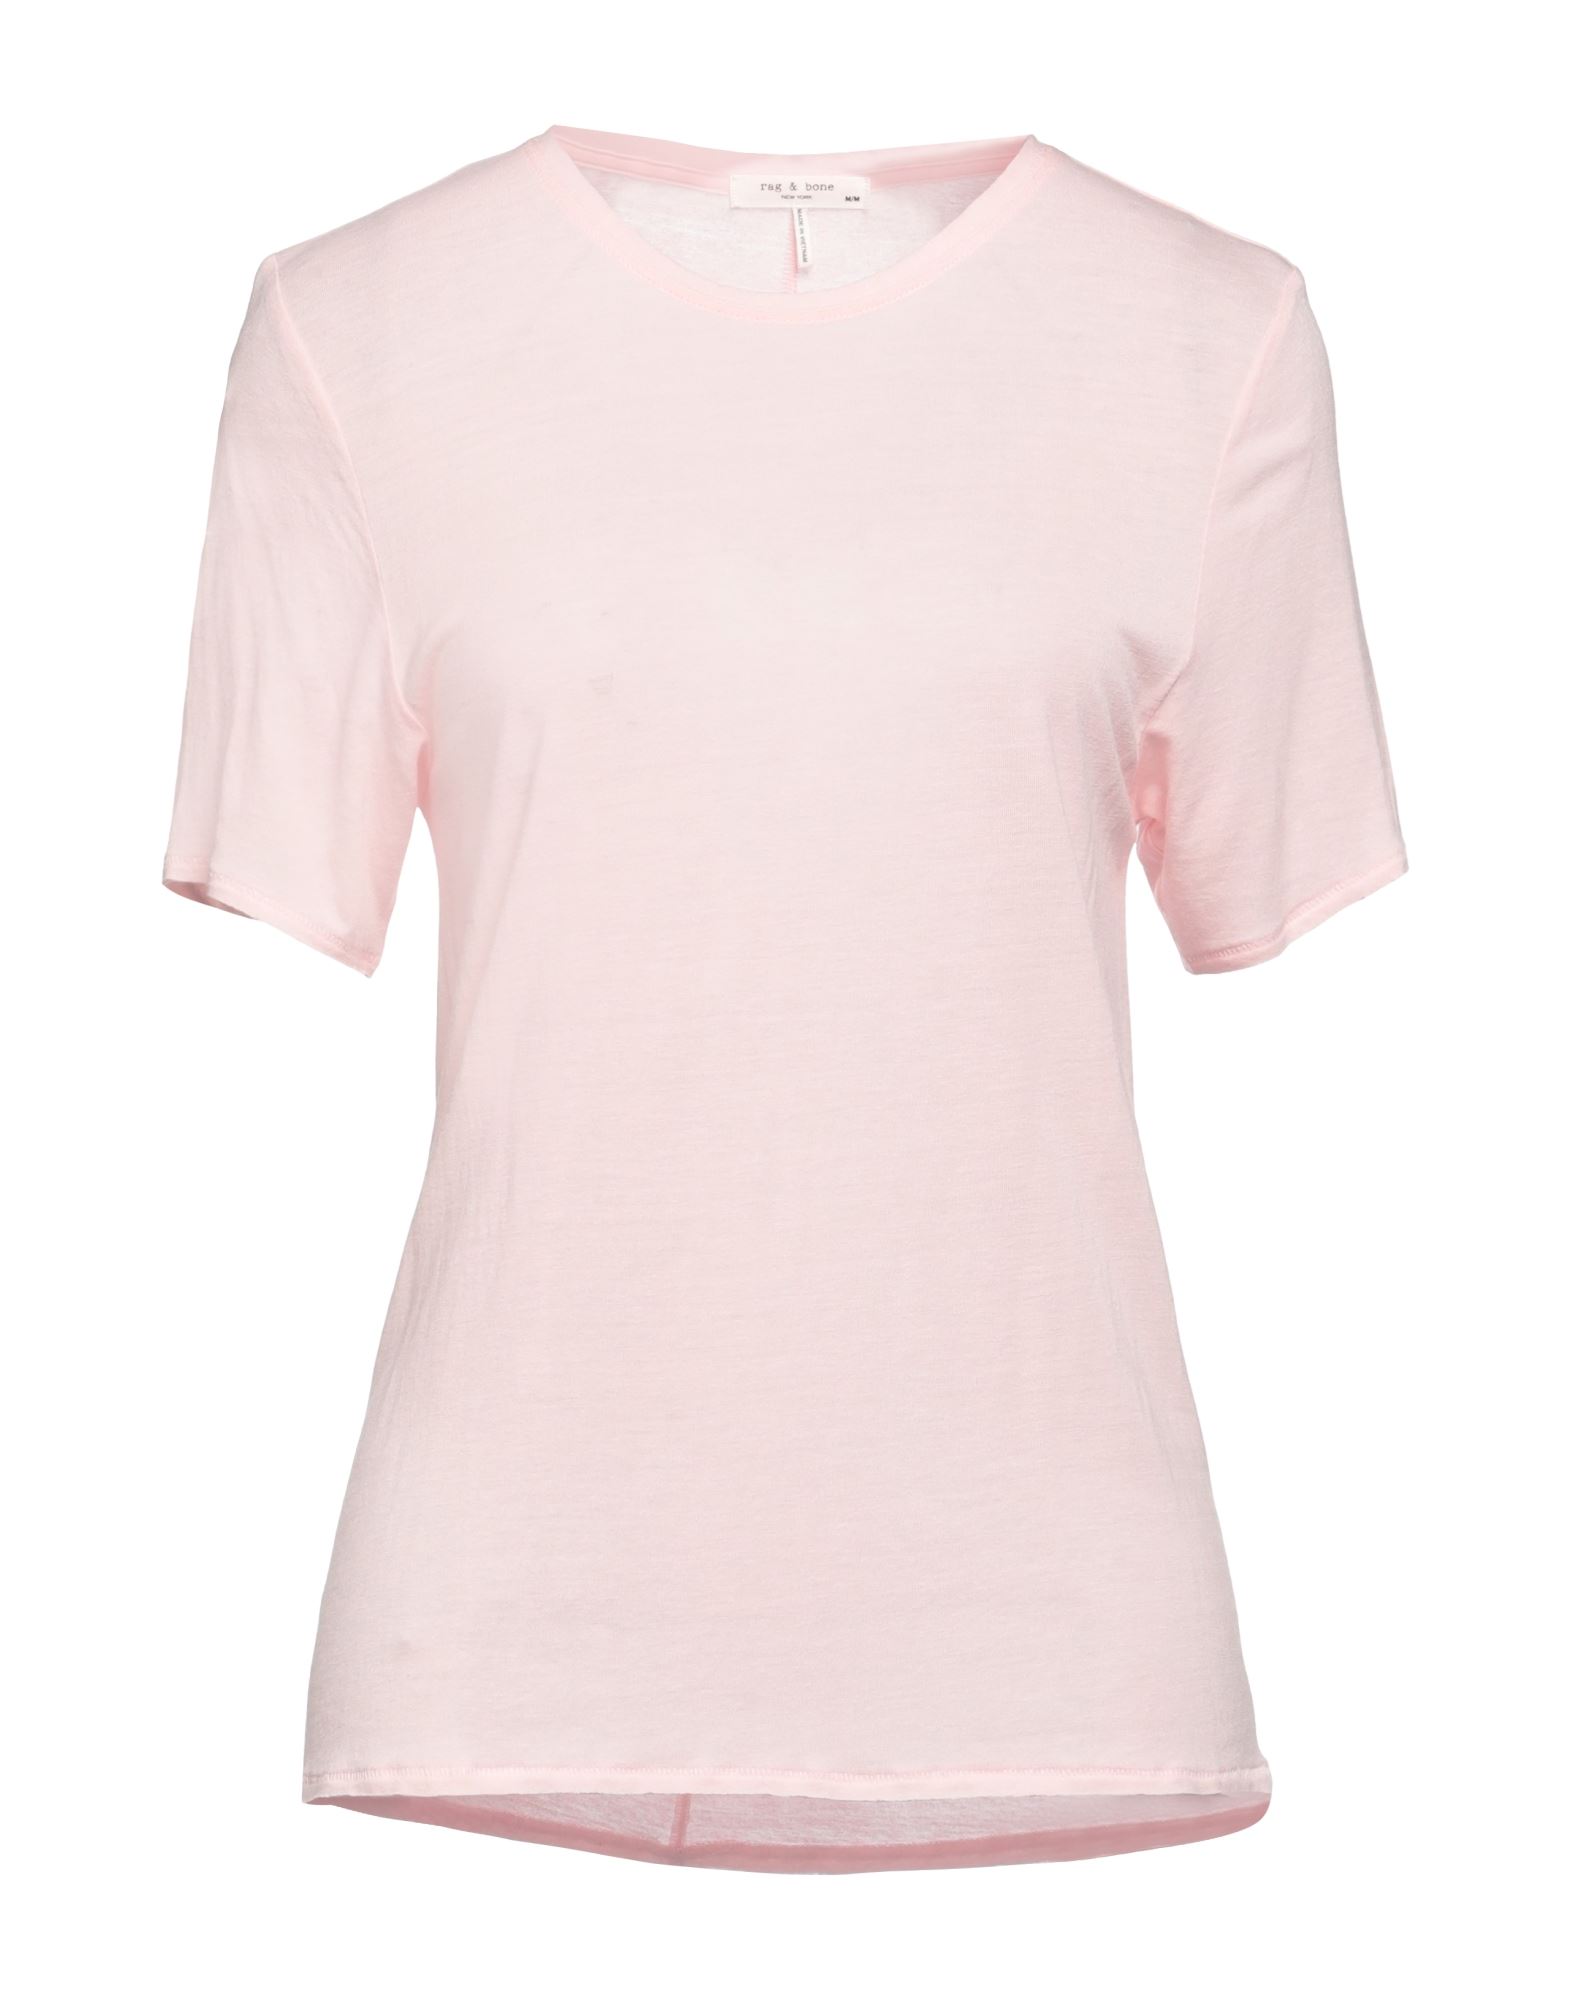 Rag & Bone Woman T-shirt Light Pink Size Xs Rayon, Linen